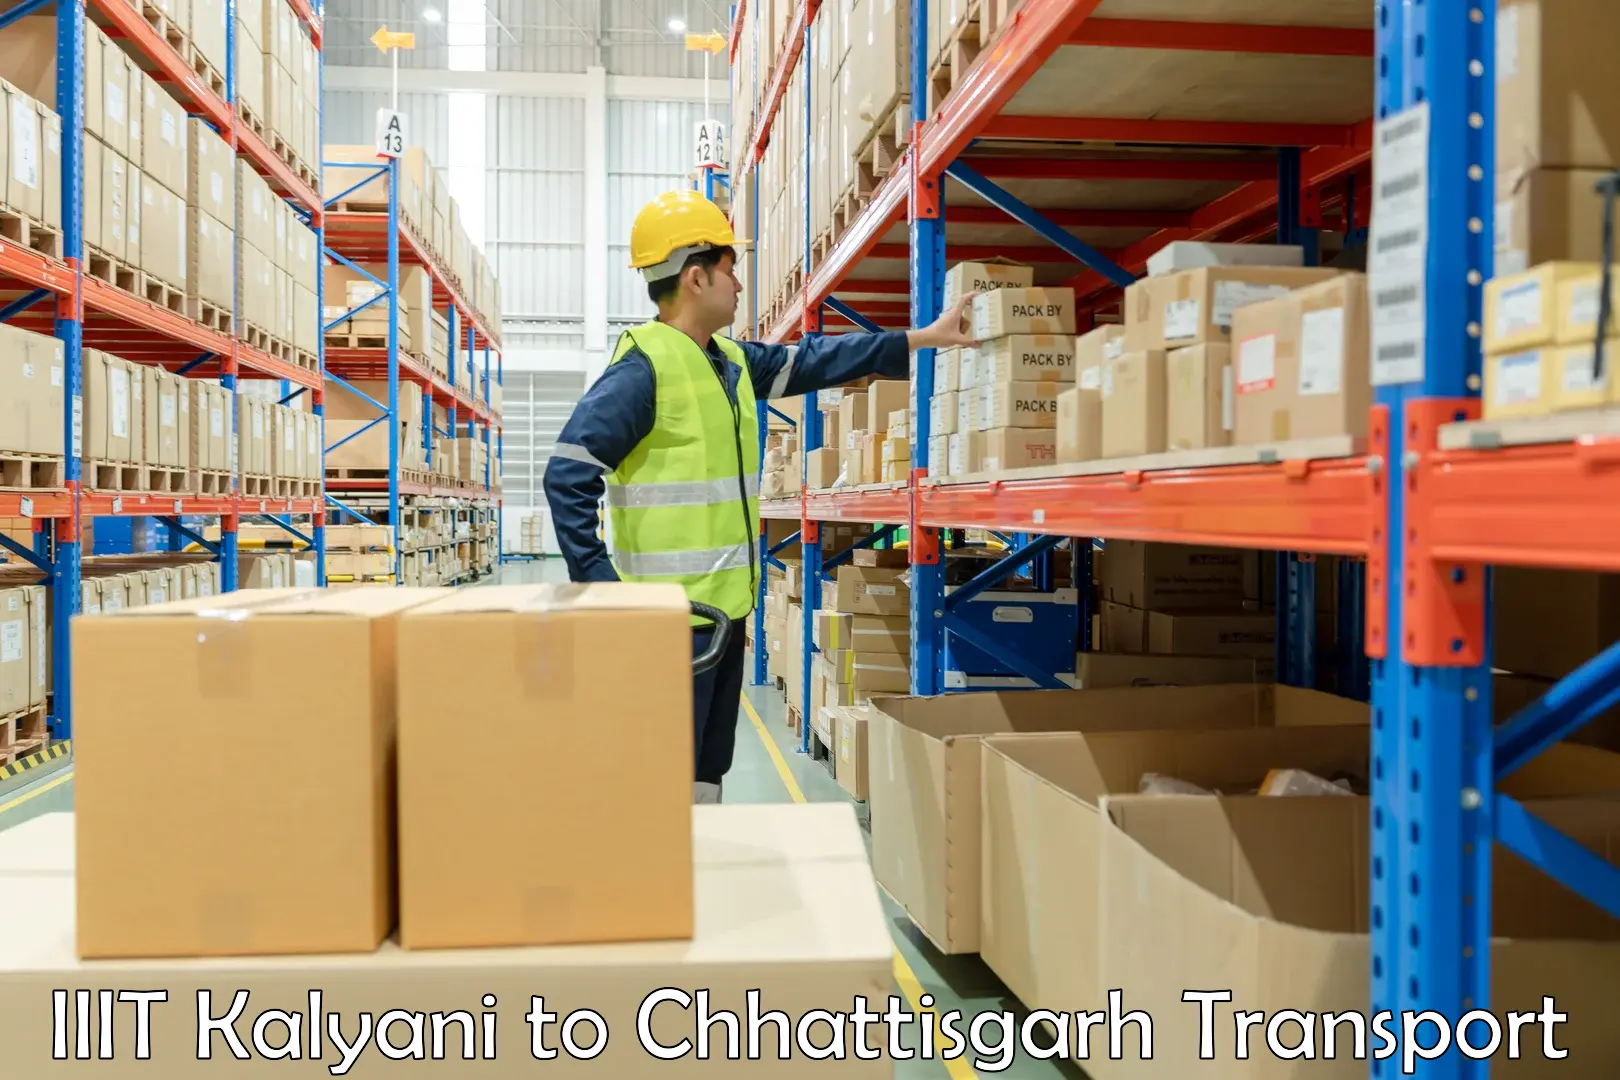 Truck transport companies in India IIIT Kalyani to Chhattisgarh